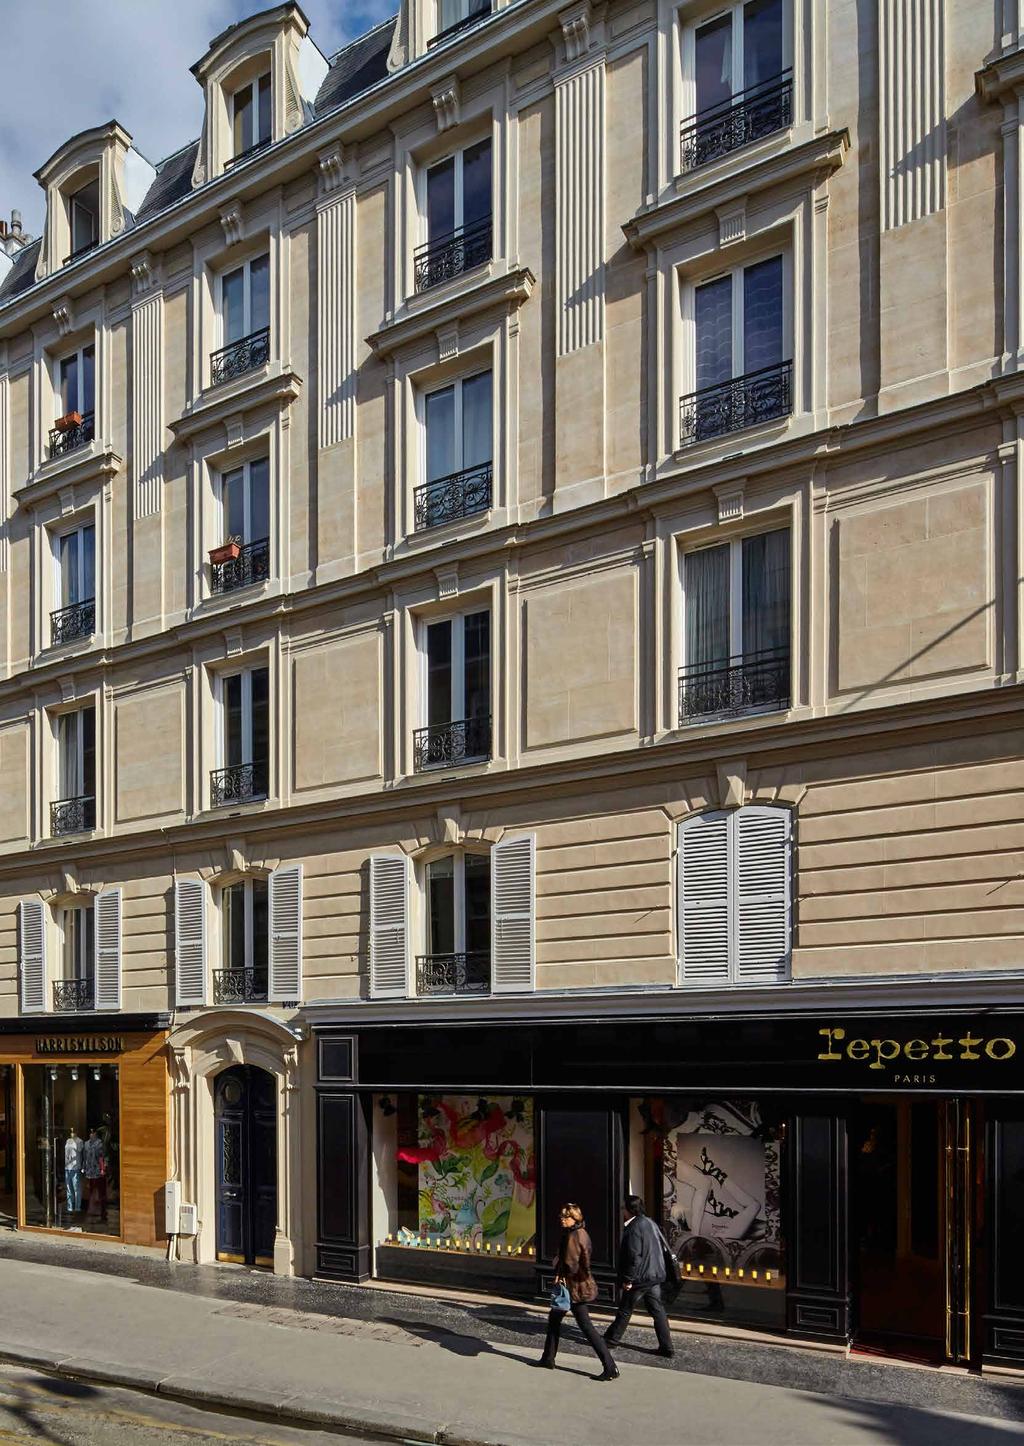 IMMOBILIENBESTAND PARIS 18 24 RUE DE CHARONNE, PARIS Mitten im prosperierenden Bastille- Viertel der Seine-Metropole hat das Fondsmanagement im November 2014 fünf gehobene Einzelhandelsgeschäfte für